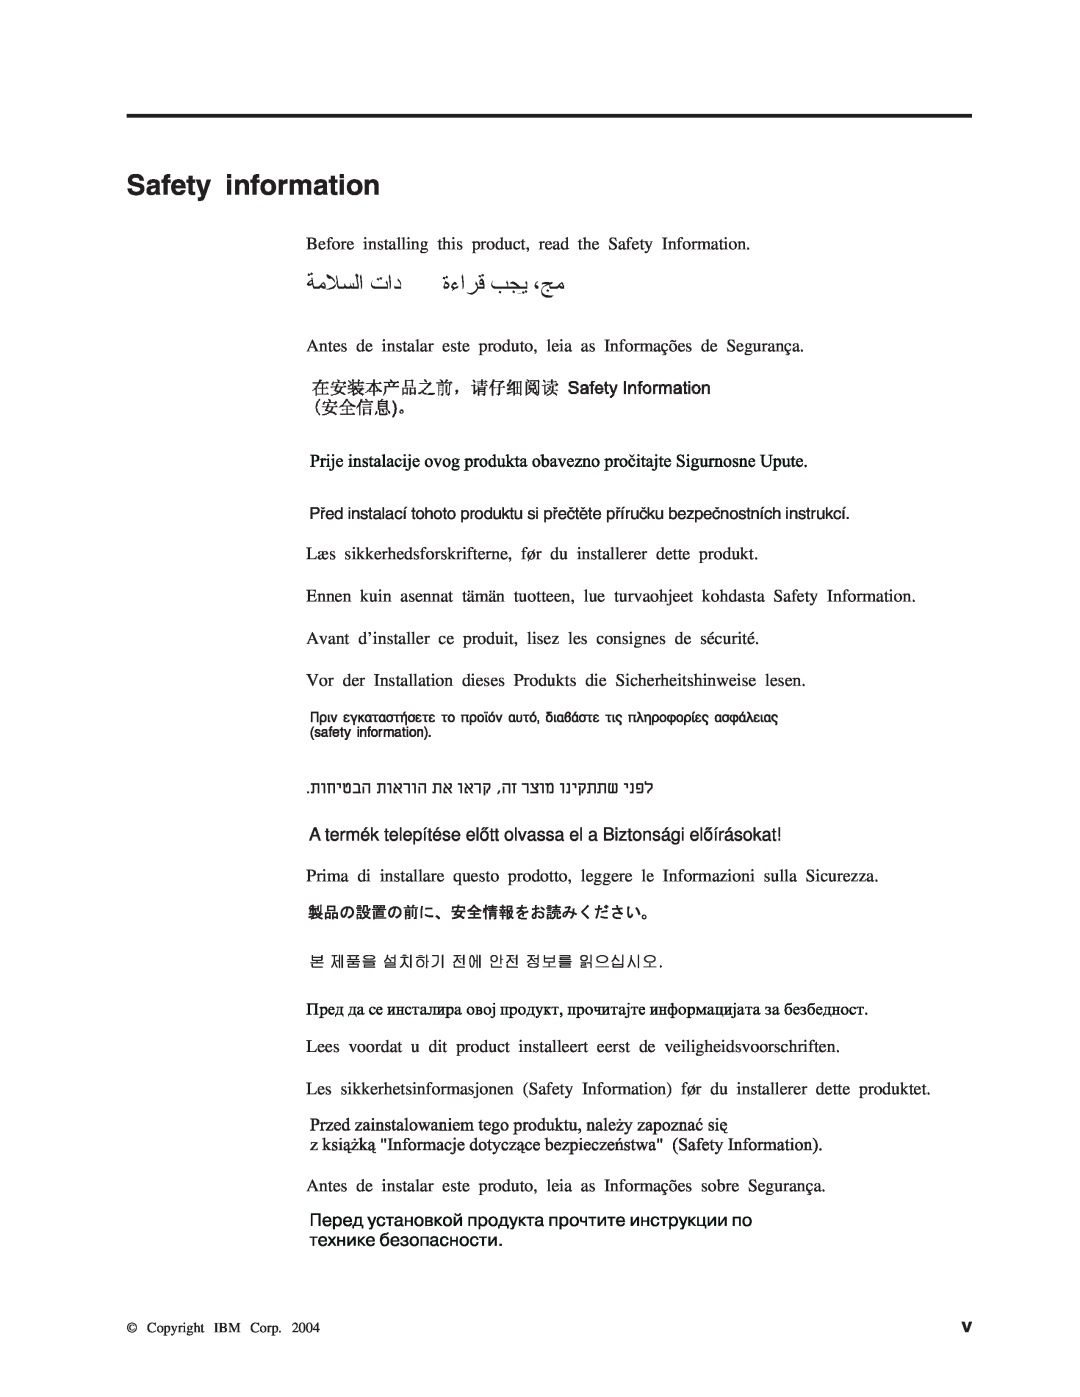 IBM M400 manual Safety information 